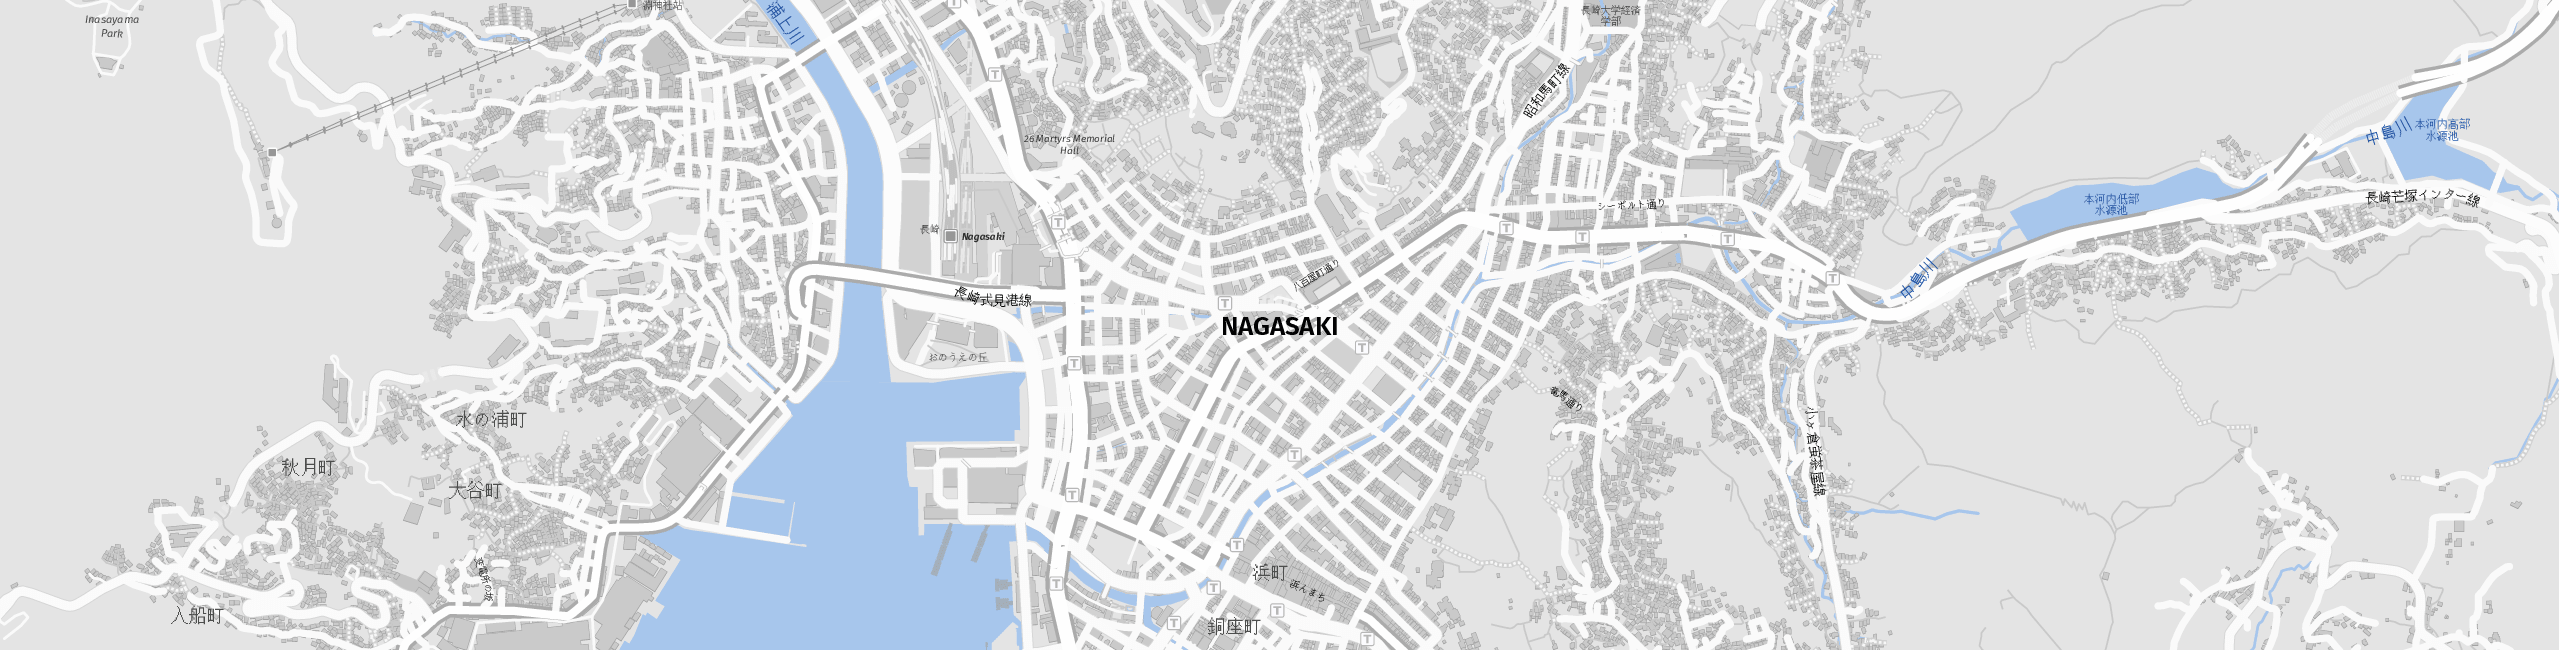 Stadtplan Nagasaki zum Downloaden.